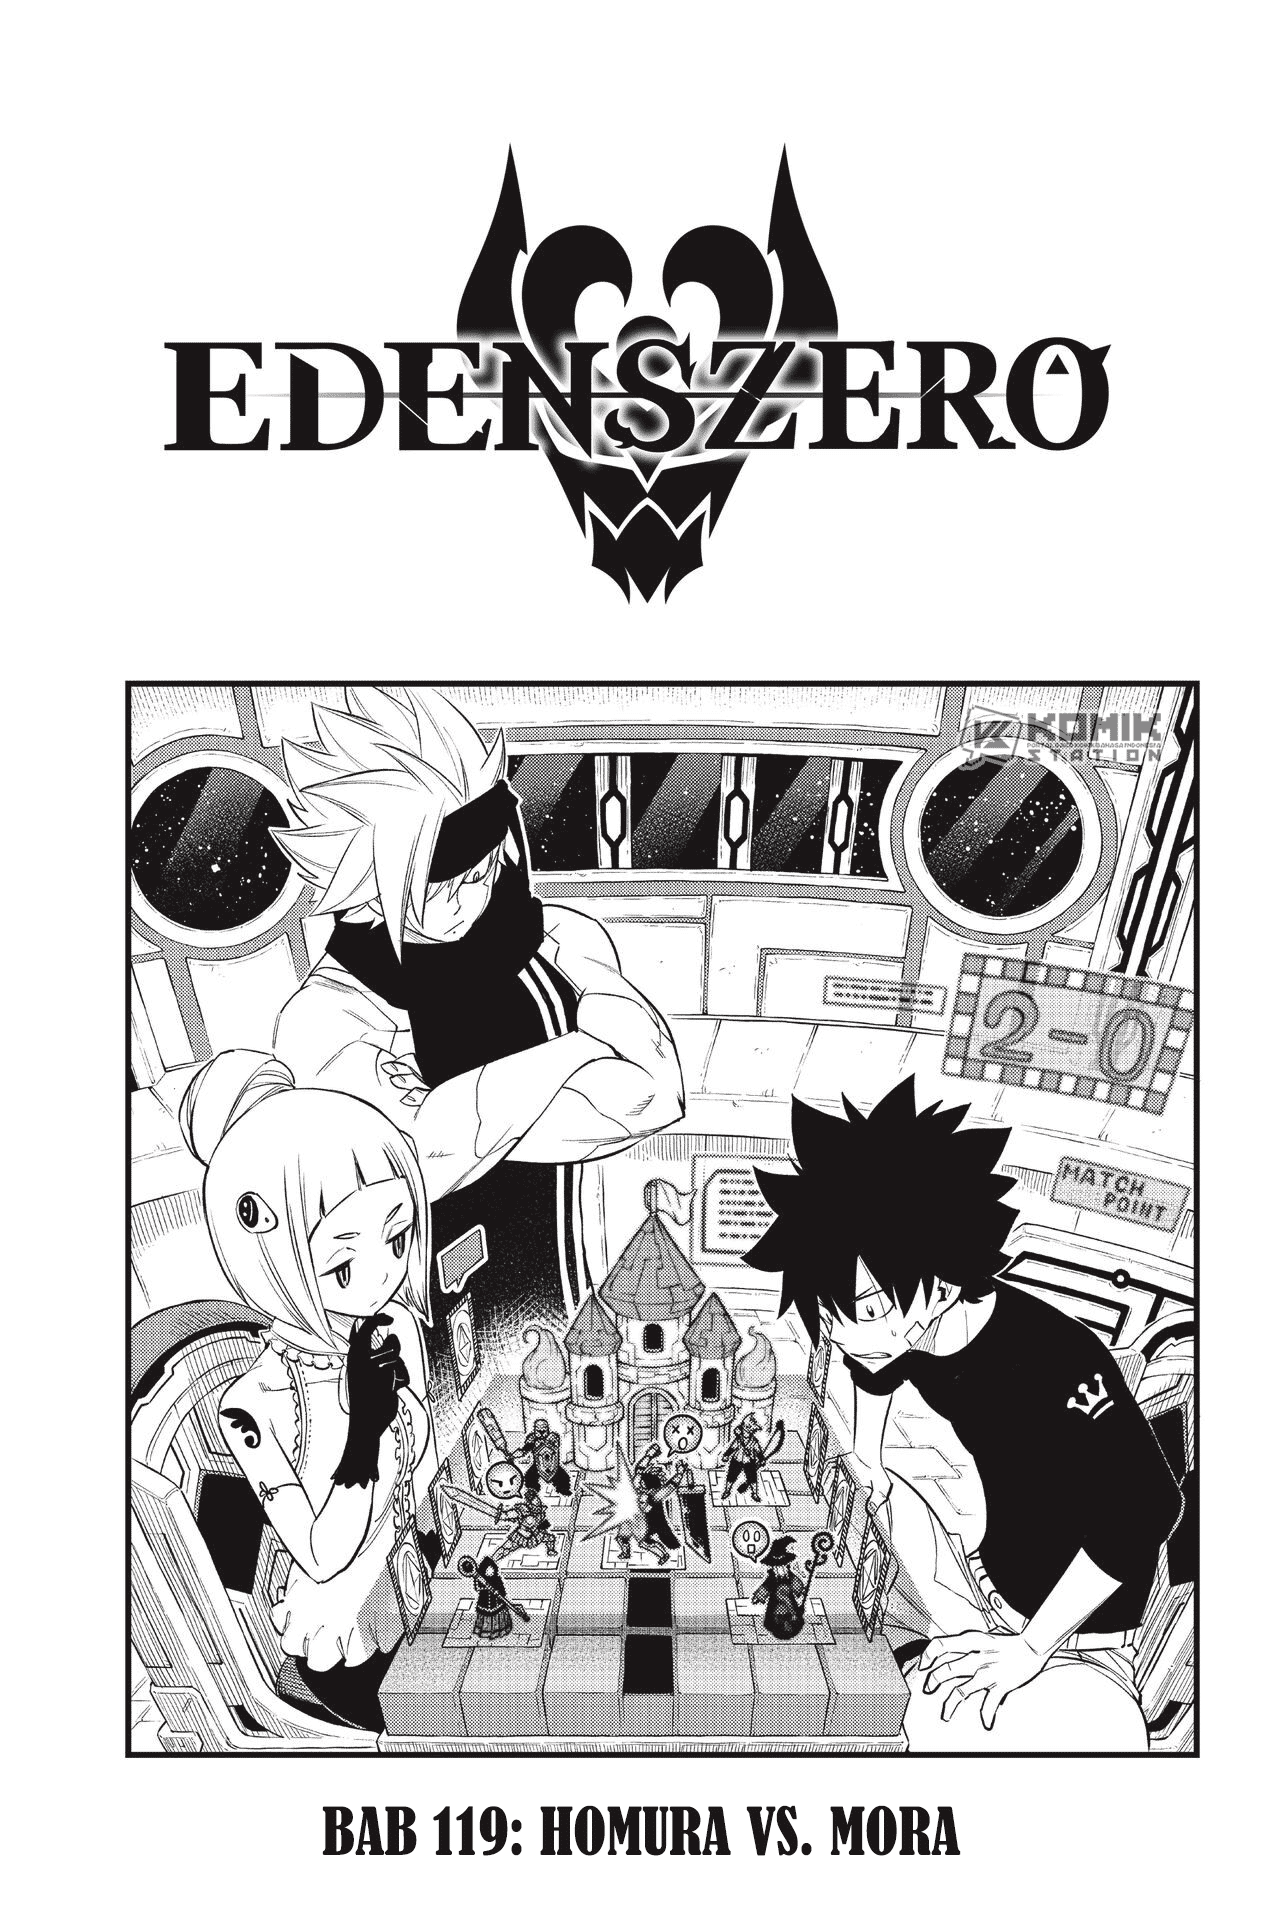 Eden’s Zero Chapter 119